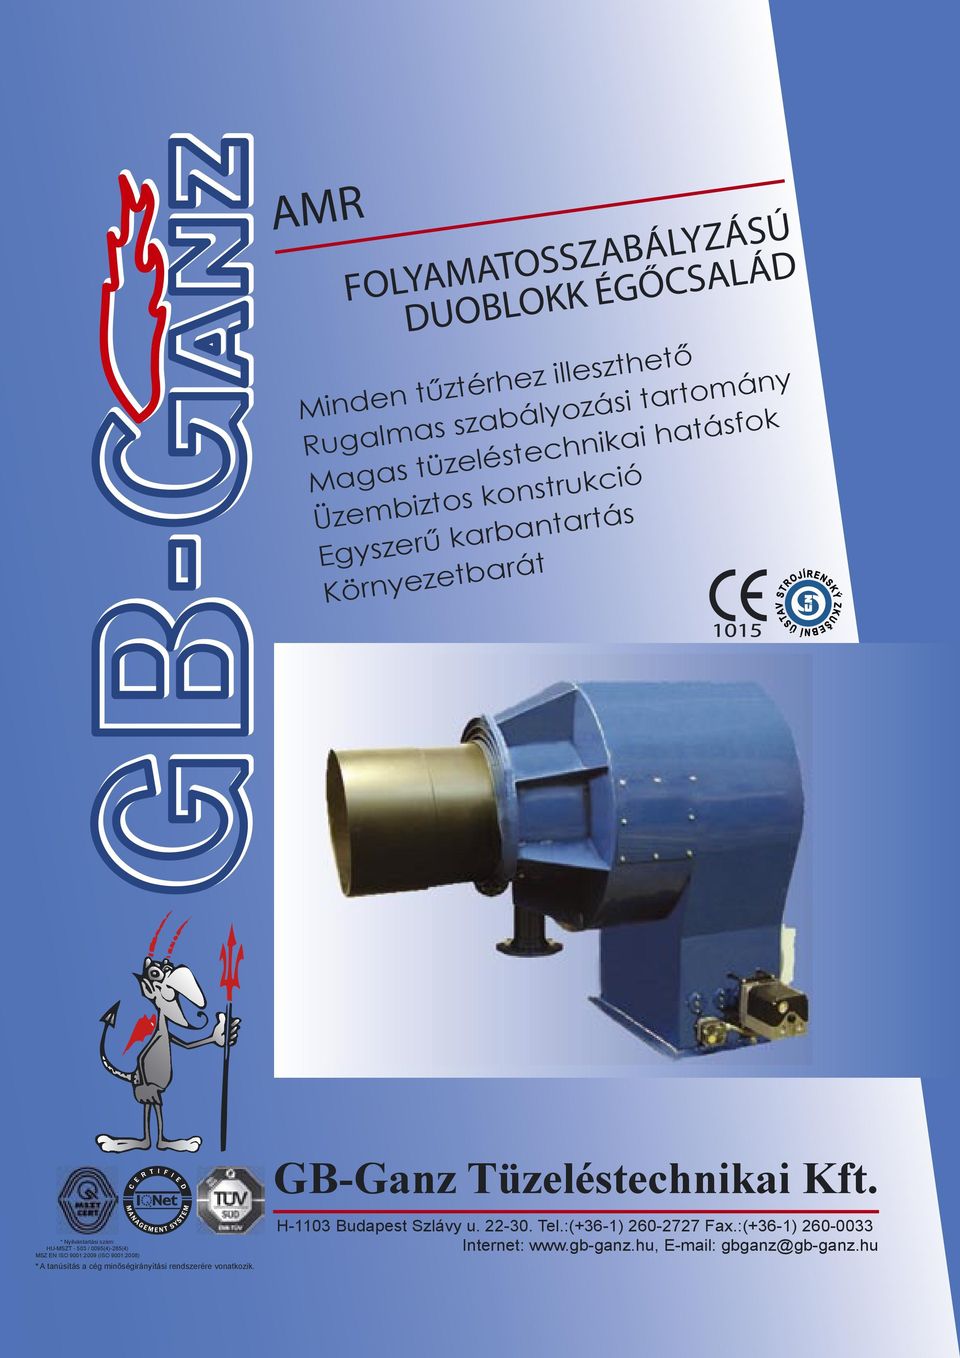 EN ISO 9001:2009 (ISO 9001:2008) * A tanúsítás a cég minőségirányítási rendszerére vonatkozik. GB-Ganz Tüzeléstechnikai Kft.